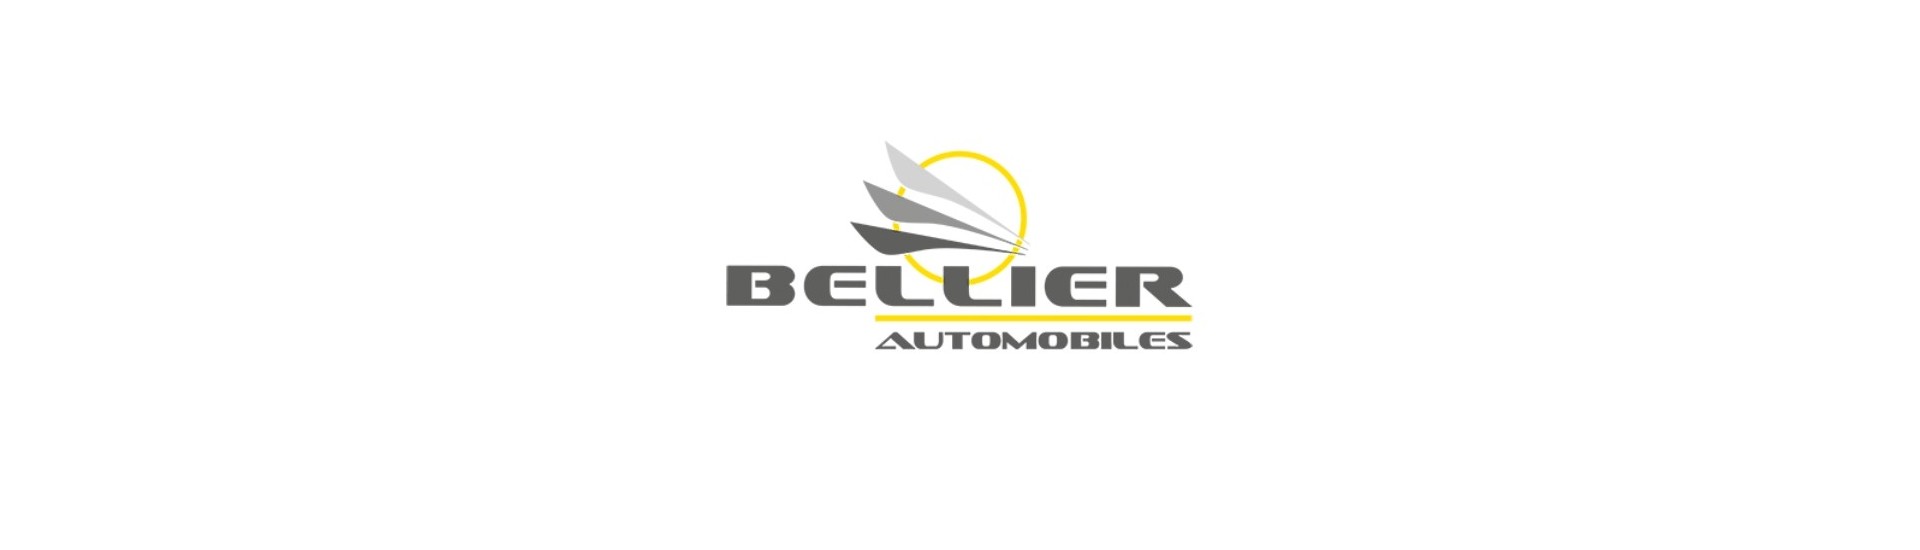 Frânare flexibilă la cel mai bun preț pentru o mașină fără permis Bellier